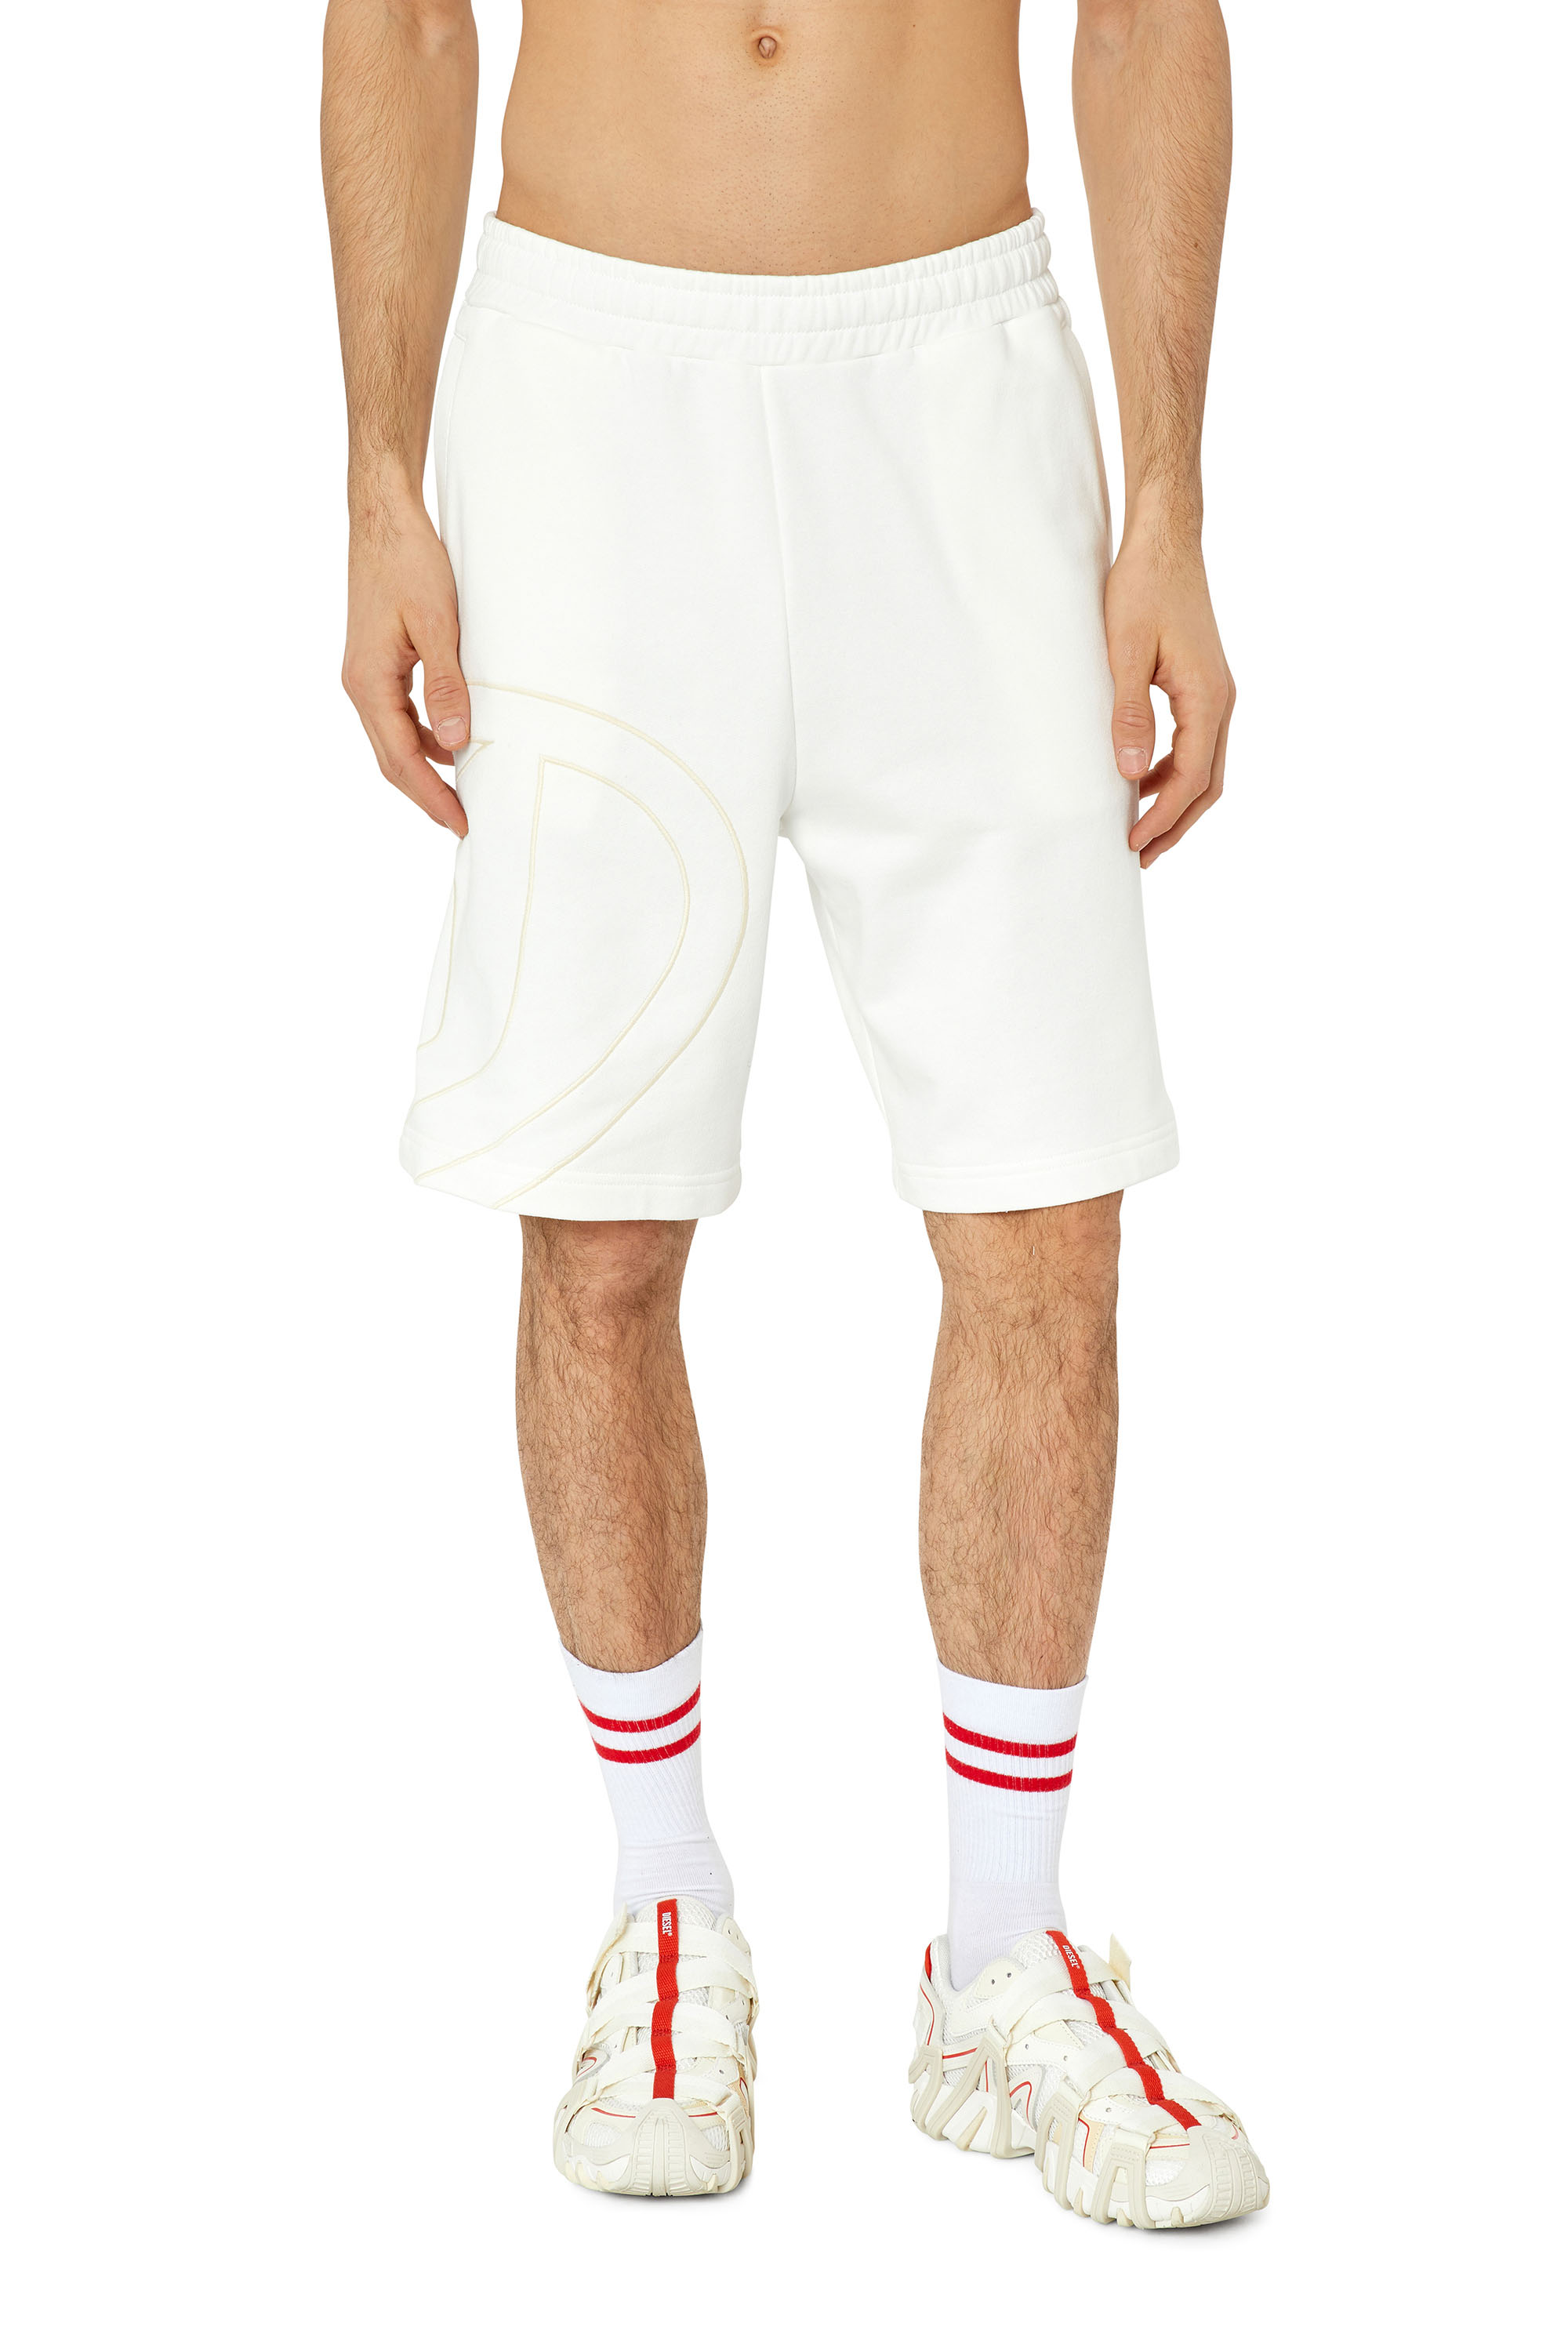 Diesel - Pantalones deportivos cortos con logotipo D grande - Shorts - Hombre - Blanco